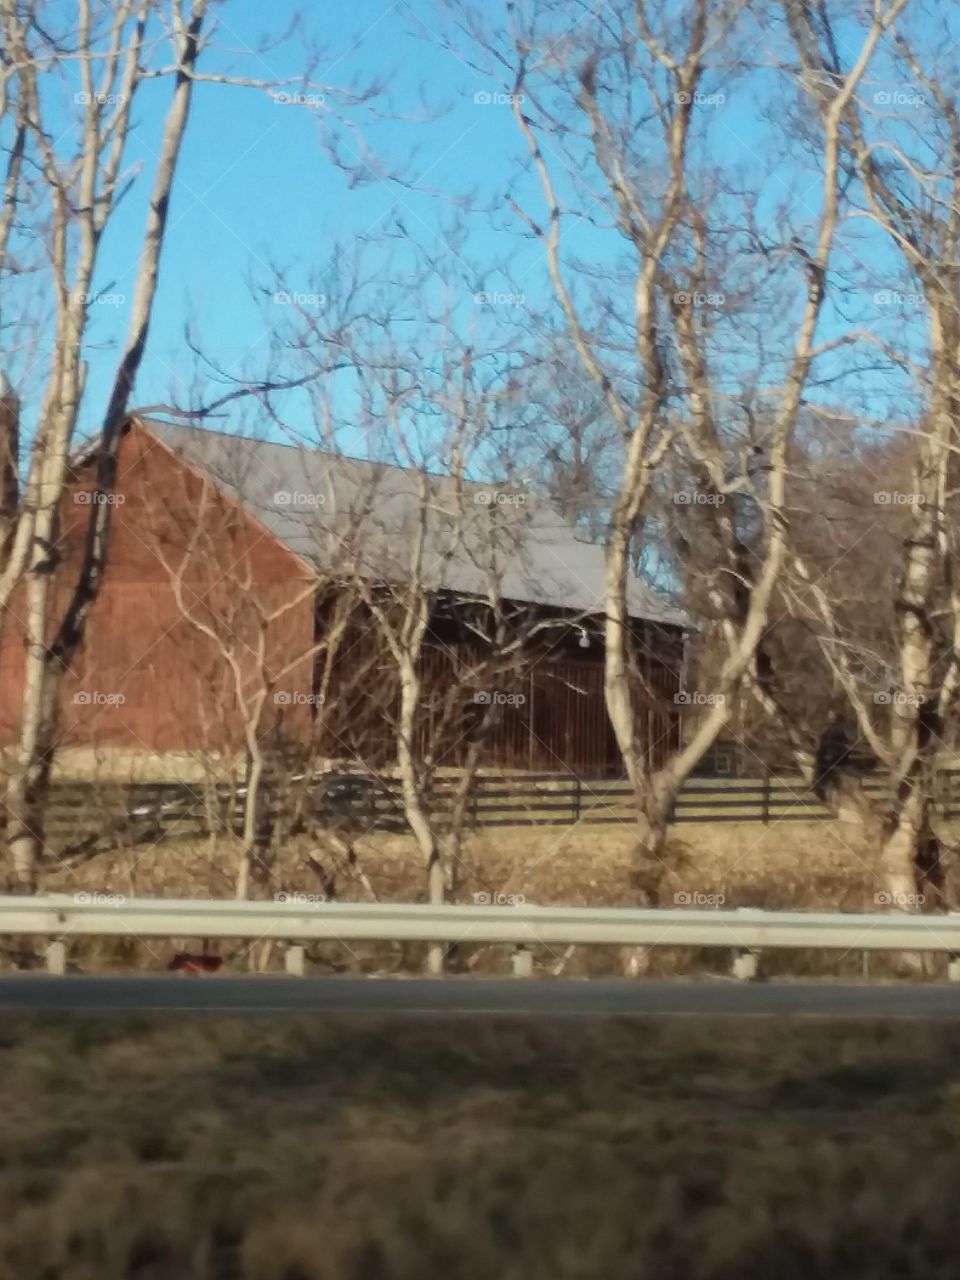 farm house